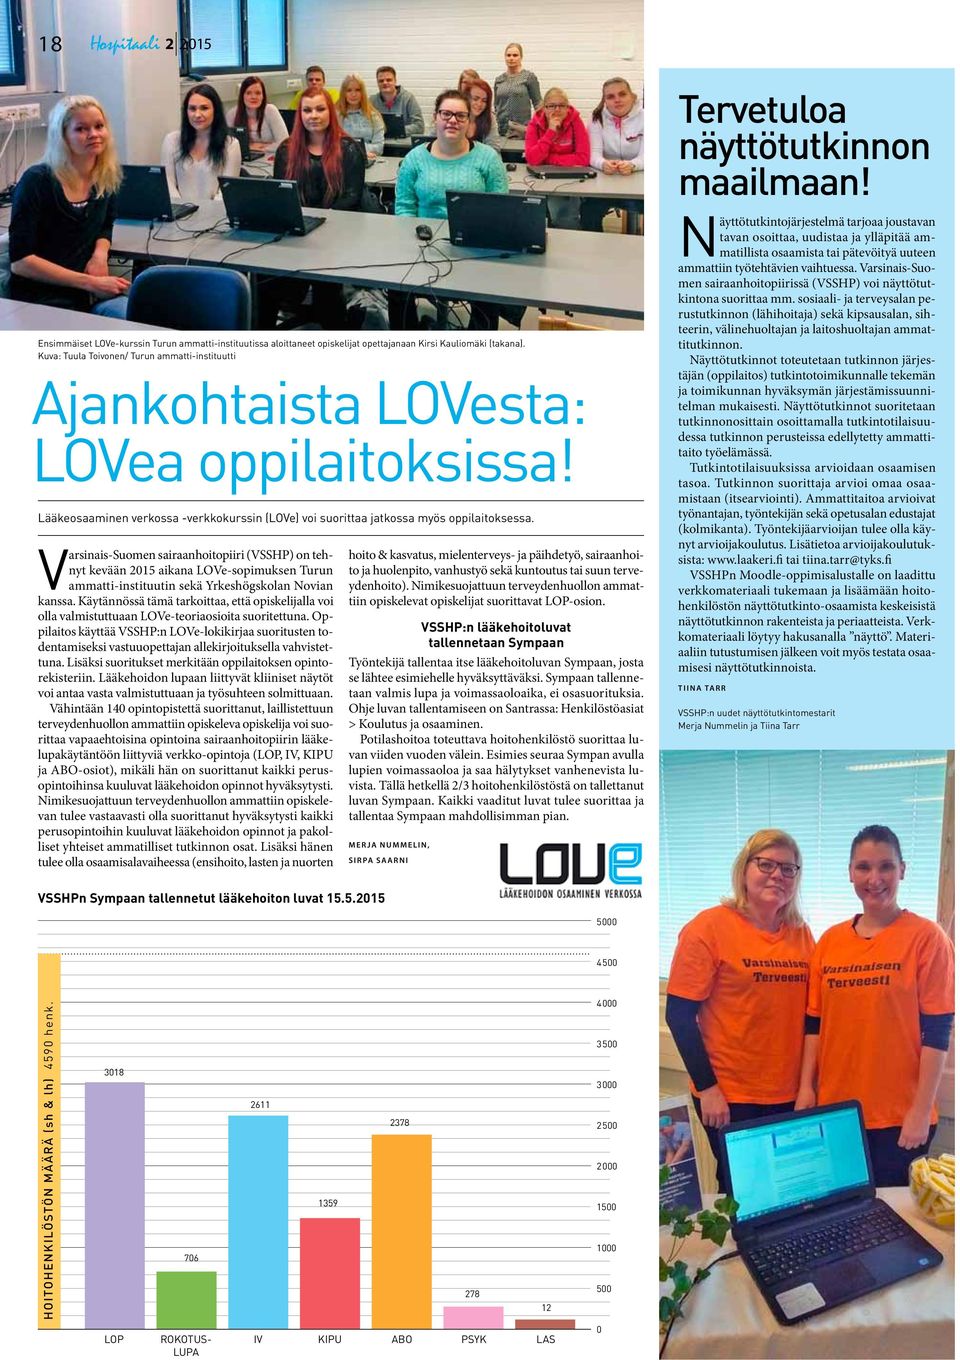 Varsinais-Suomen sairaanhoitopiiri (VSSHP) on tehnyt kevään 2015 aikana LOVe-sopimuksen Turun ammatti-instituutin sekä Yrkeshögskolan Novian kanssa.